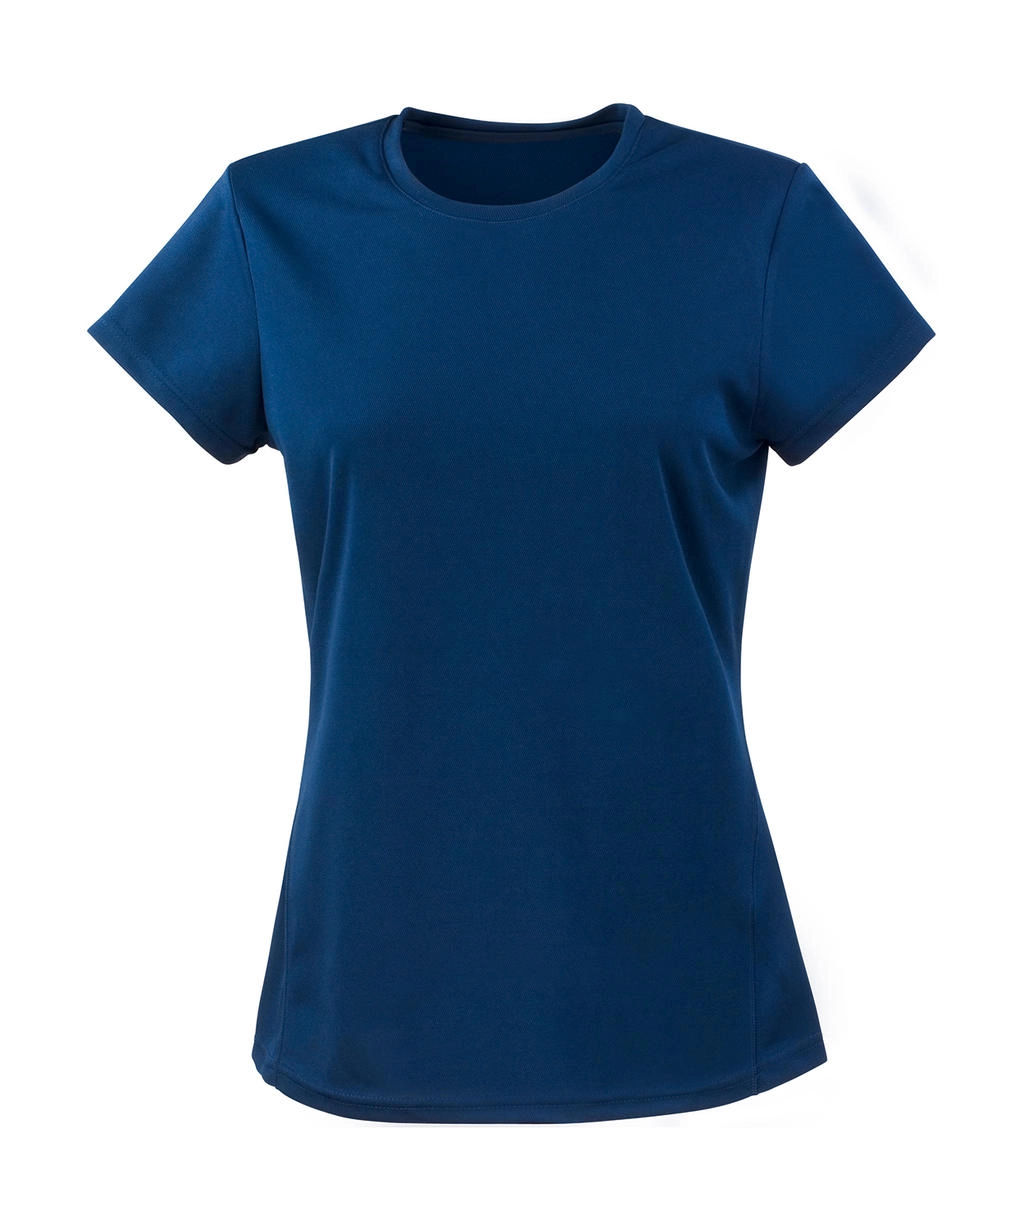 Ladies` Performance T-Shirt zum Besticken und Bedrucken in der Farbe Navy mit Ihren Logo, Schriftzug oder Motiv.